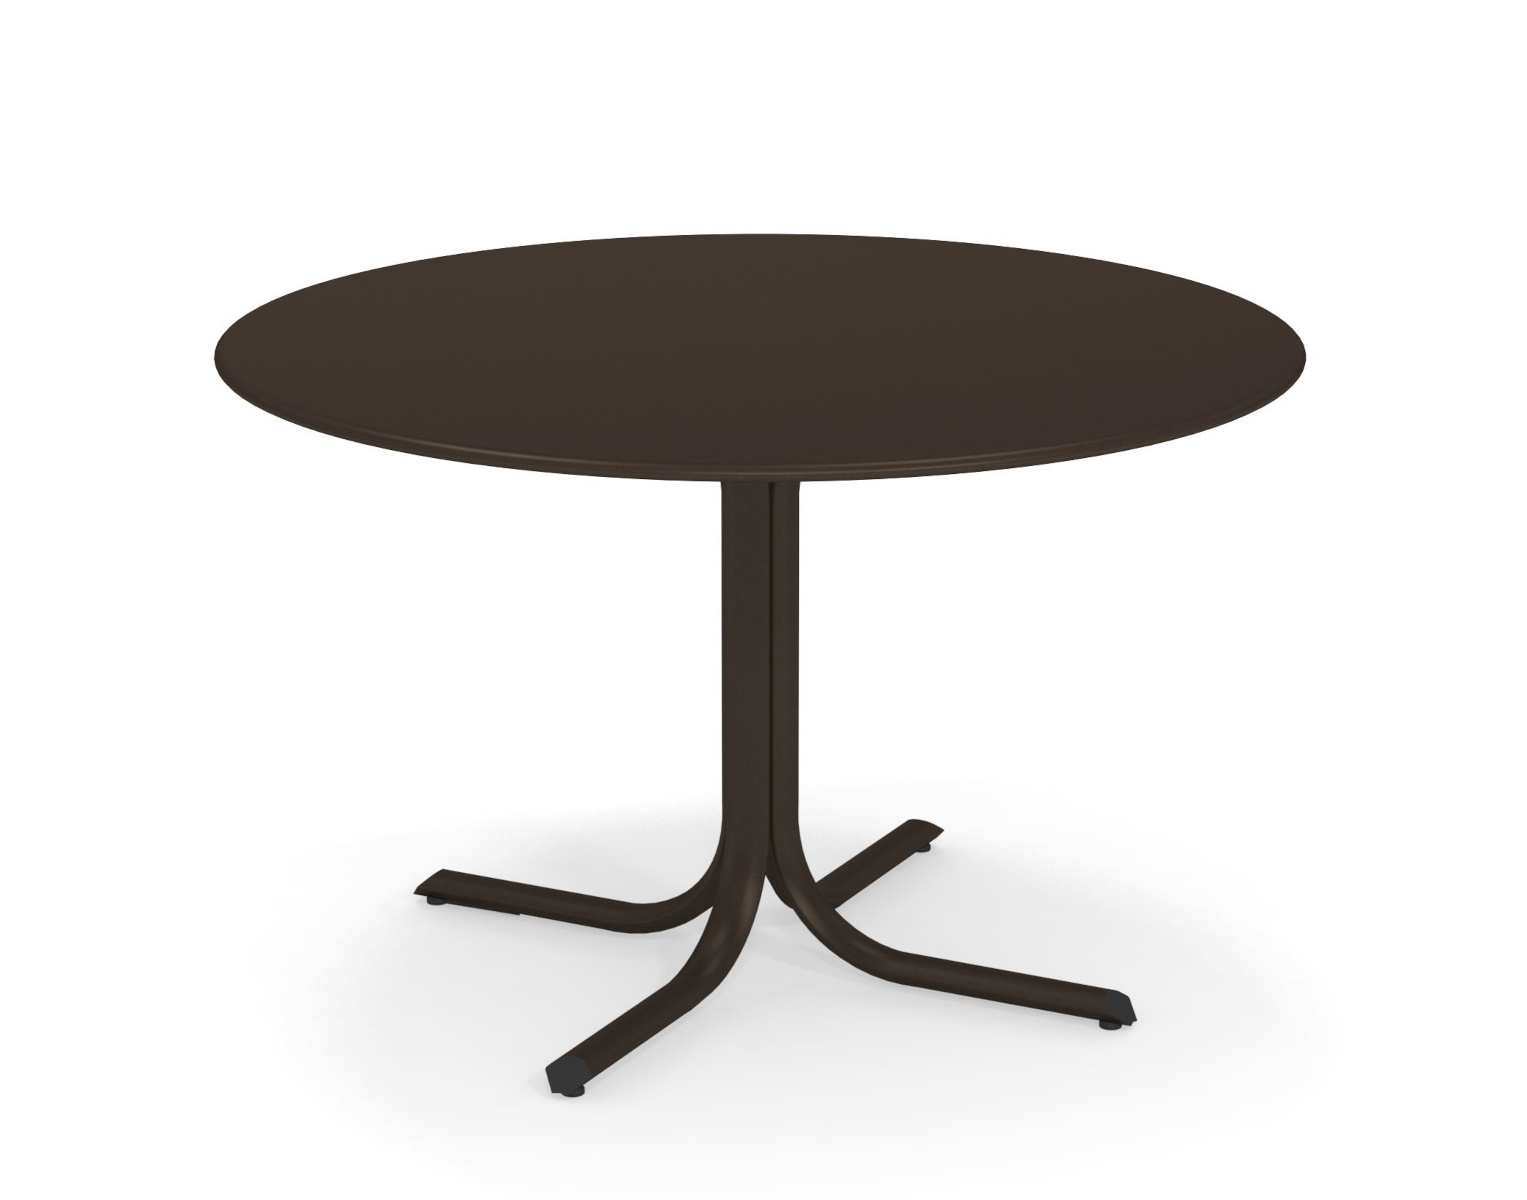 Table System mit runder Tischkante, Ø 117 cm, antikeisen